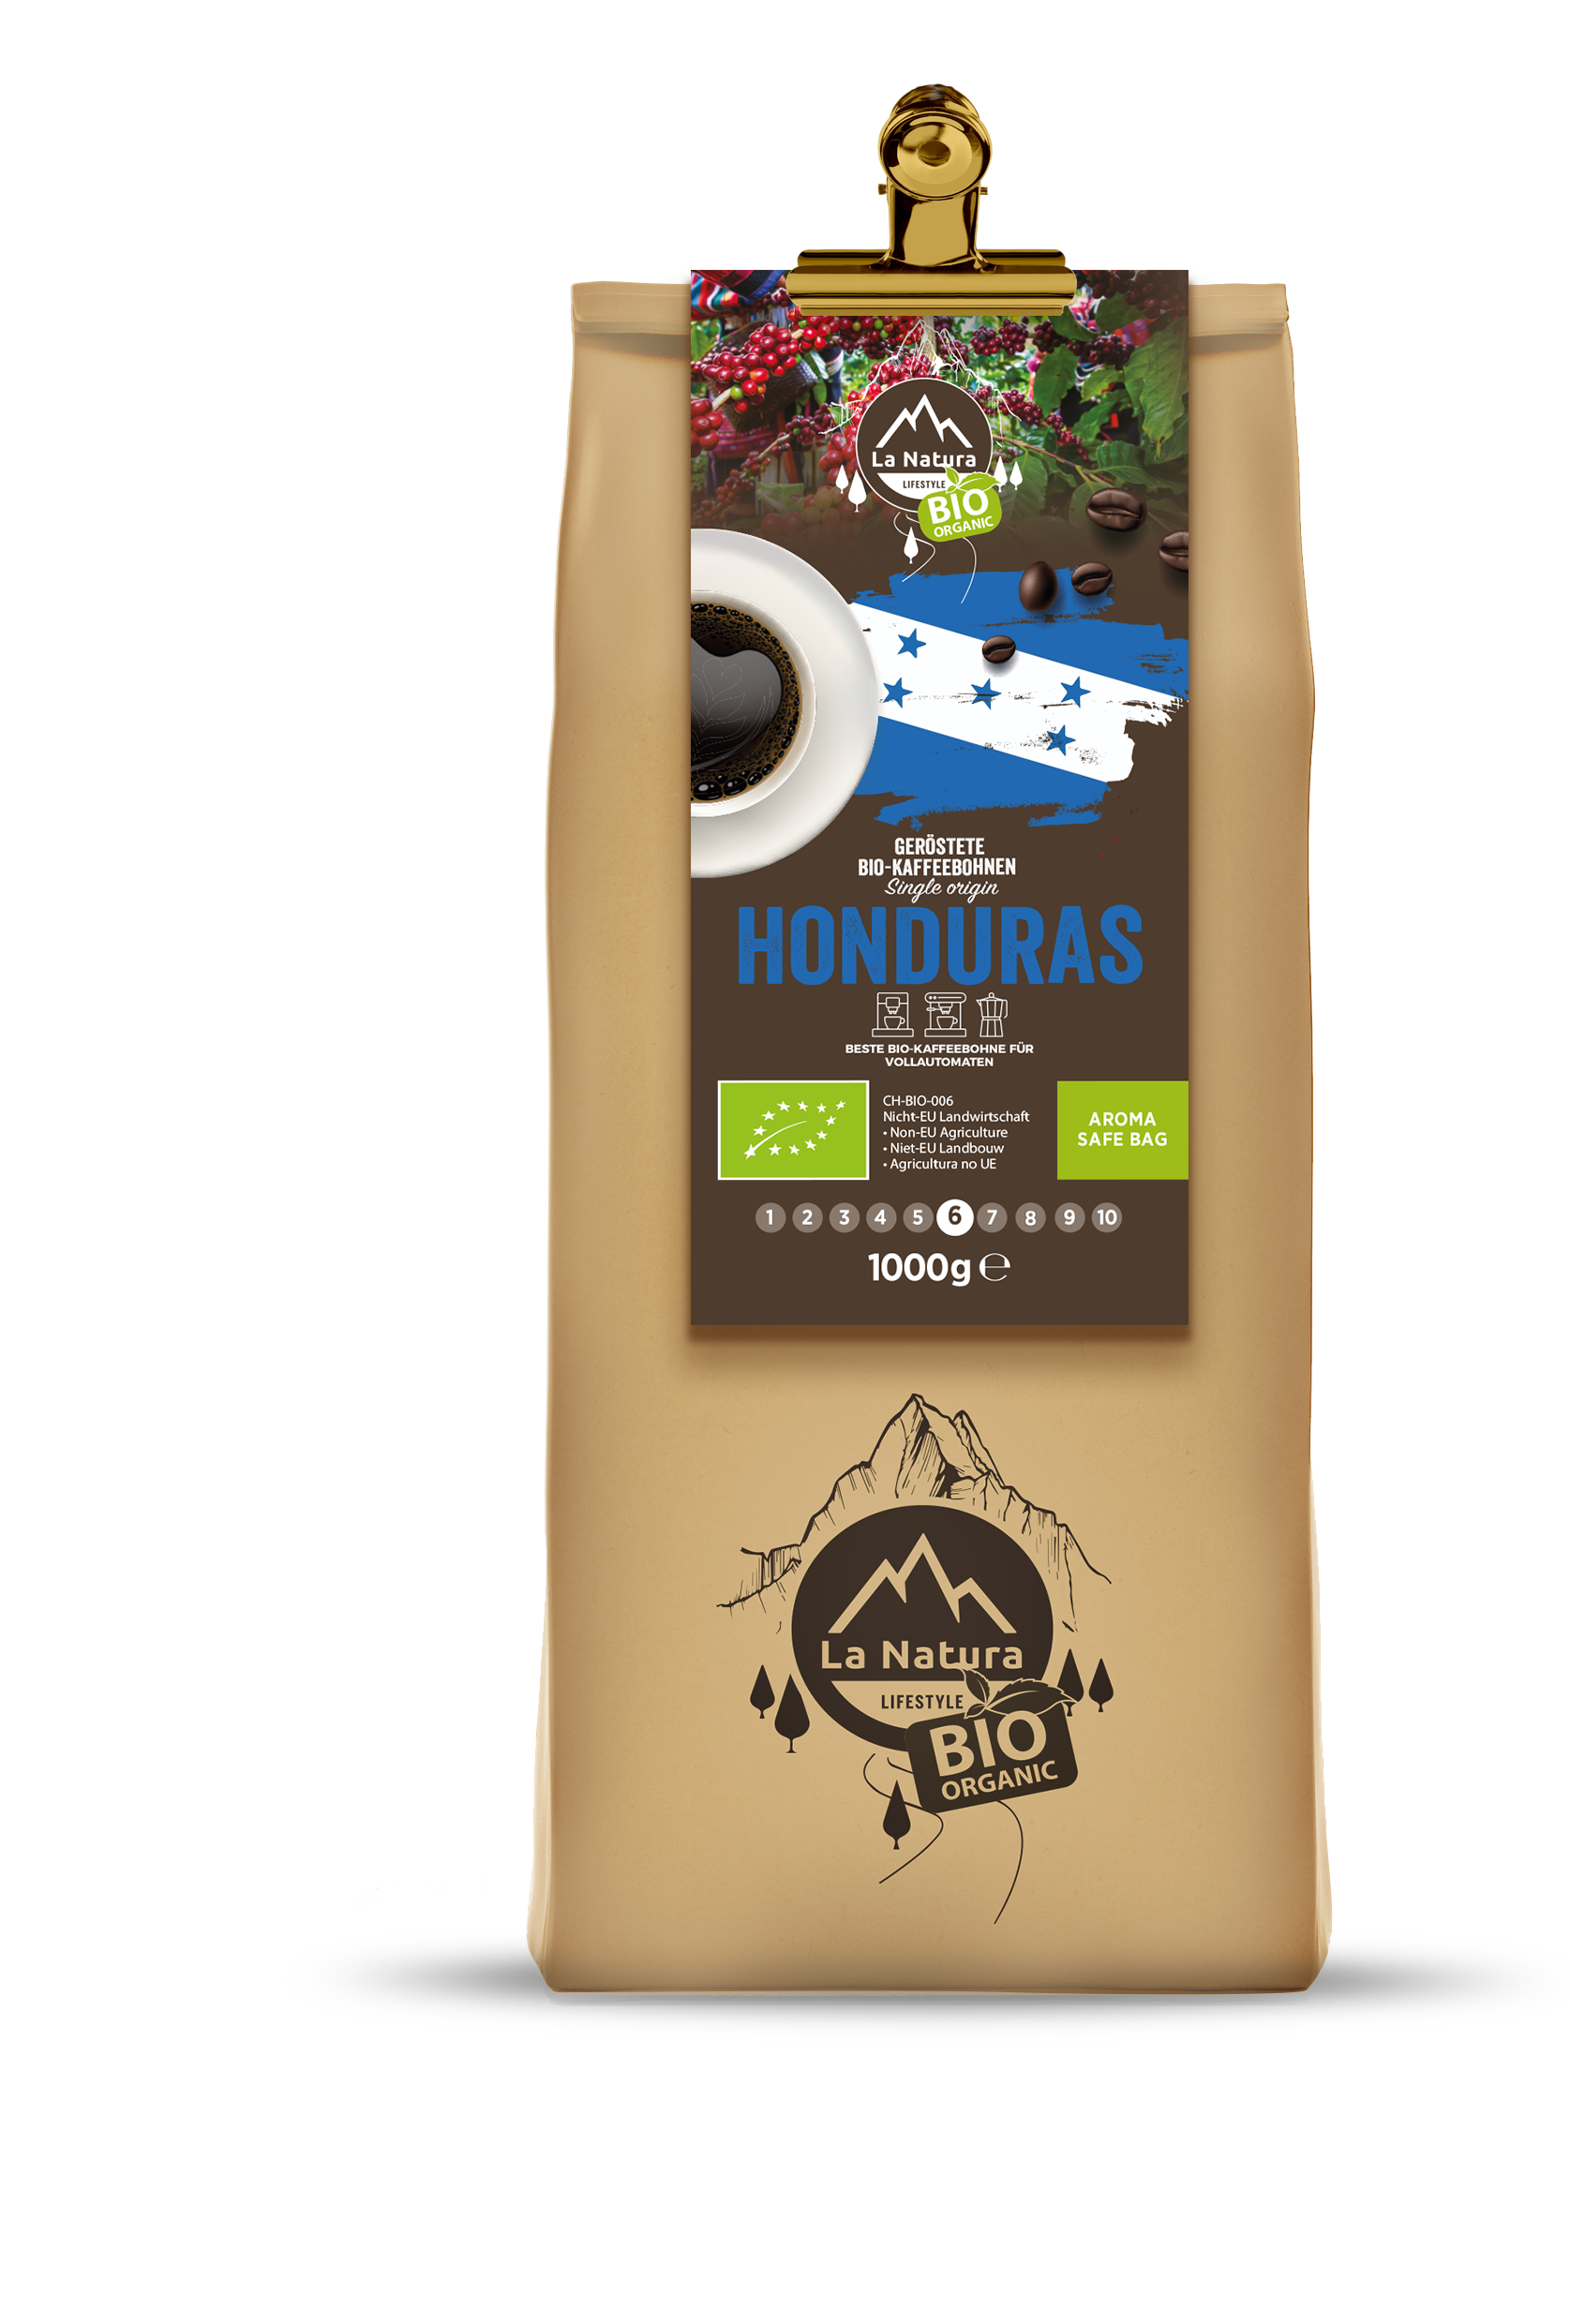 HONDURAS ORGANIC coffee bean